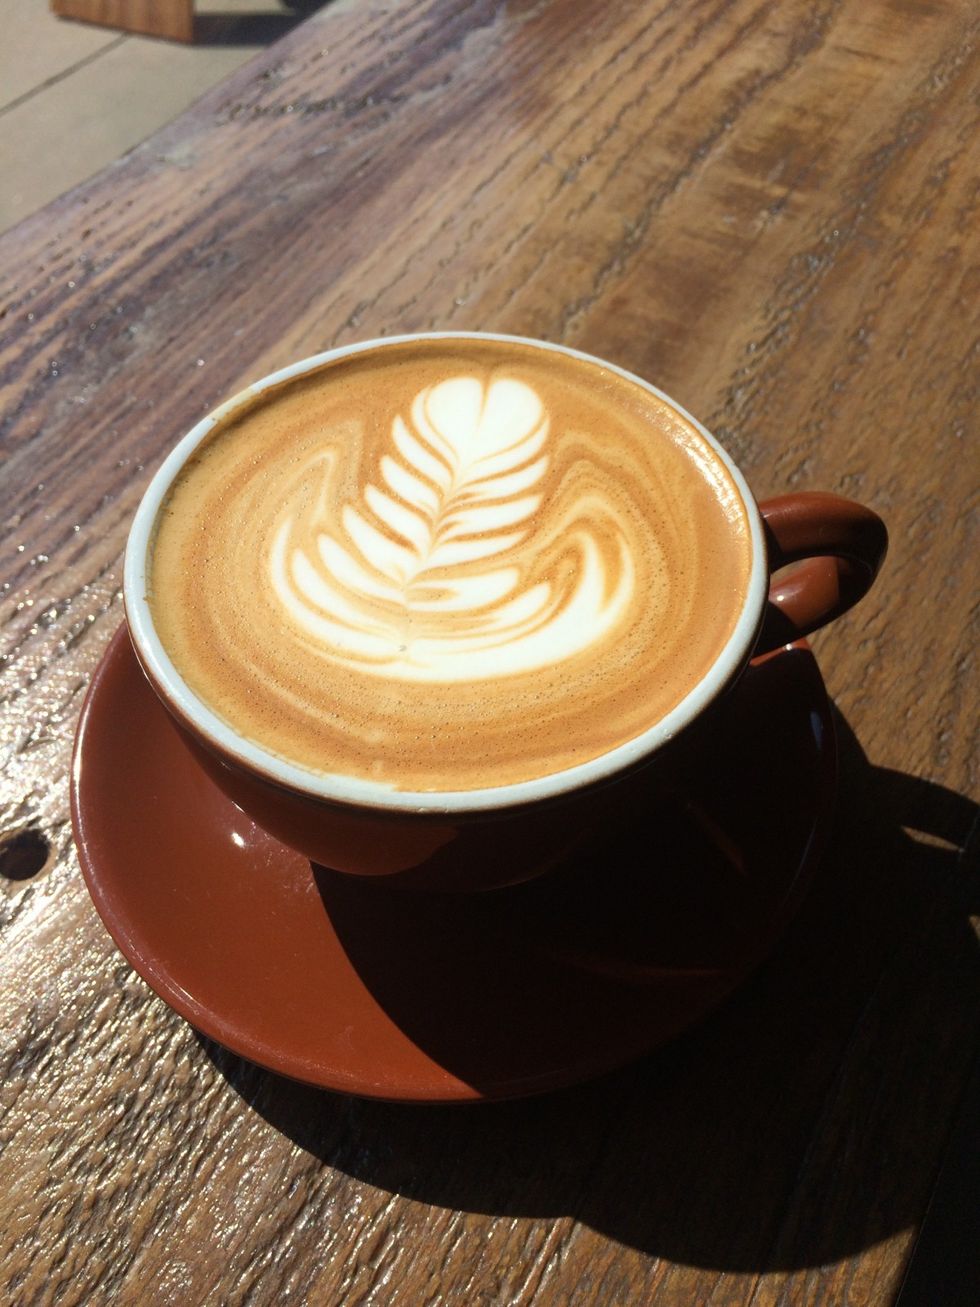 Rhode Island’s 5 Best Coffee Shops